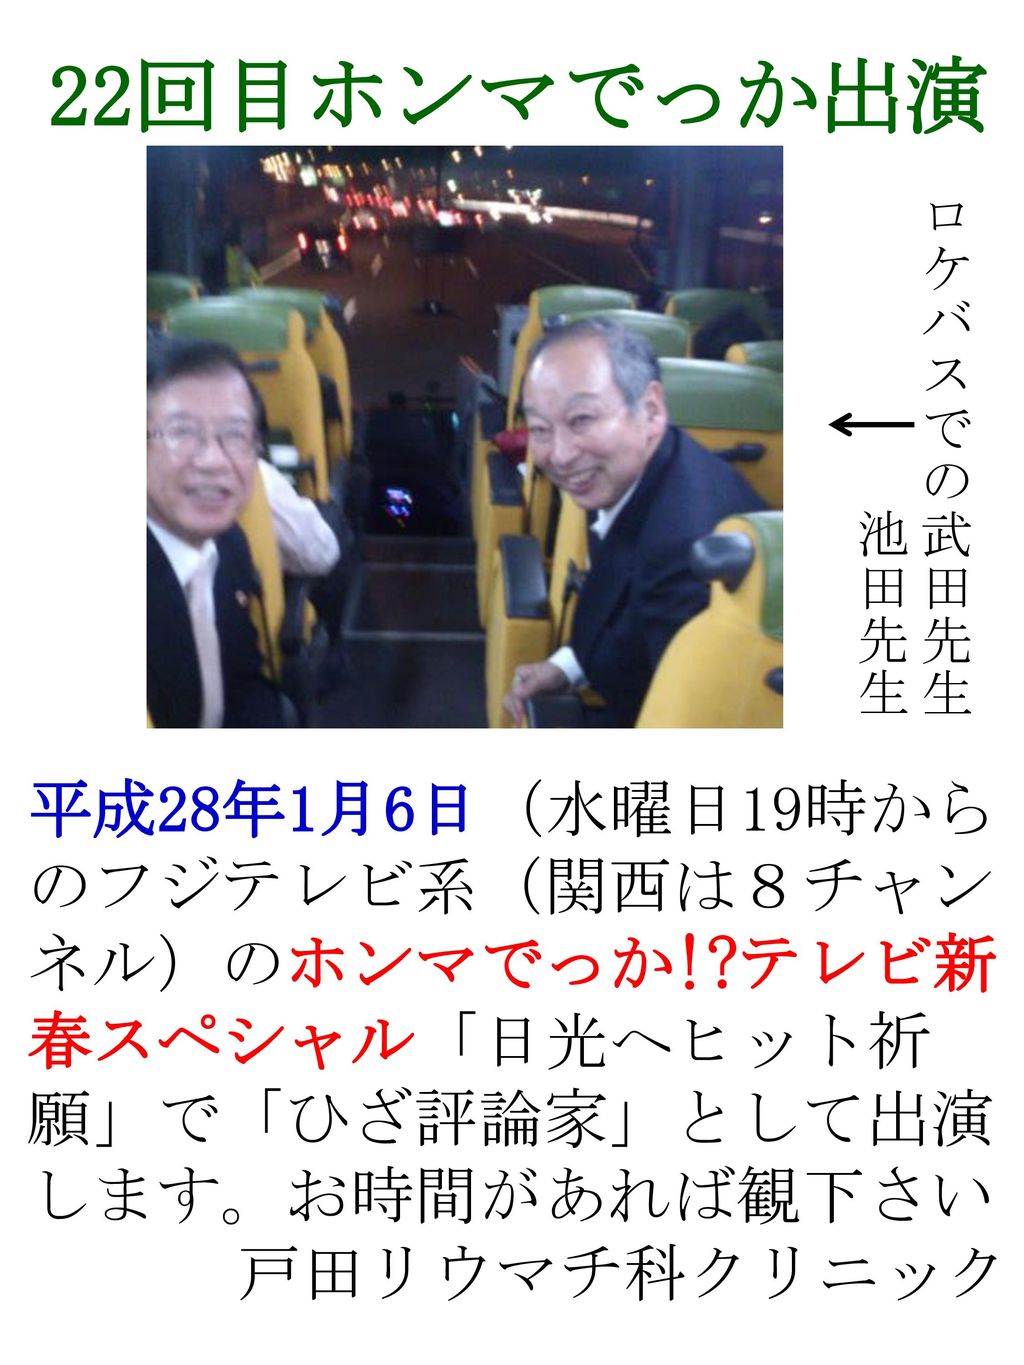 放送日変更のお詫び ２月13日に戸田院長が出演する とのお知らせをしていましたが 前日の２月12日になって 突然テレビ局から連絡があり Ppt Download